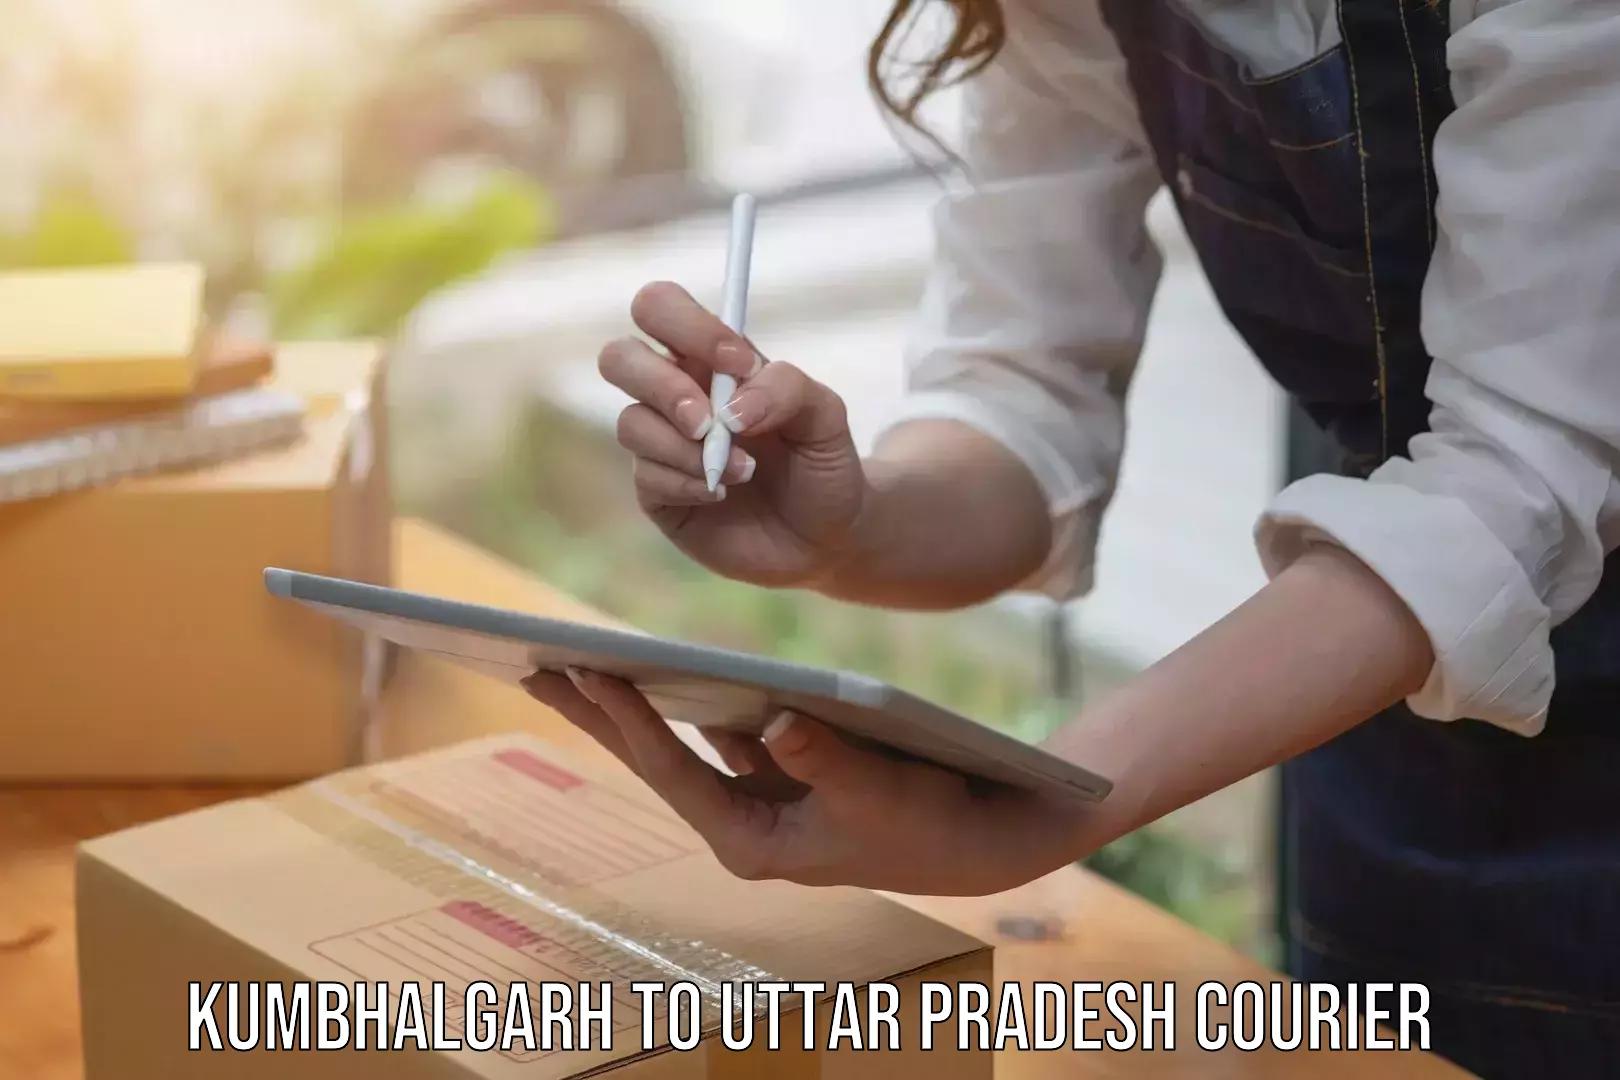 Professional courier handling Kumbhalgarh to Haidargarh